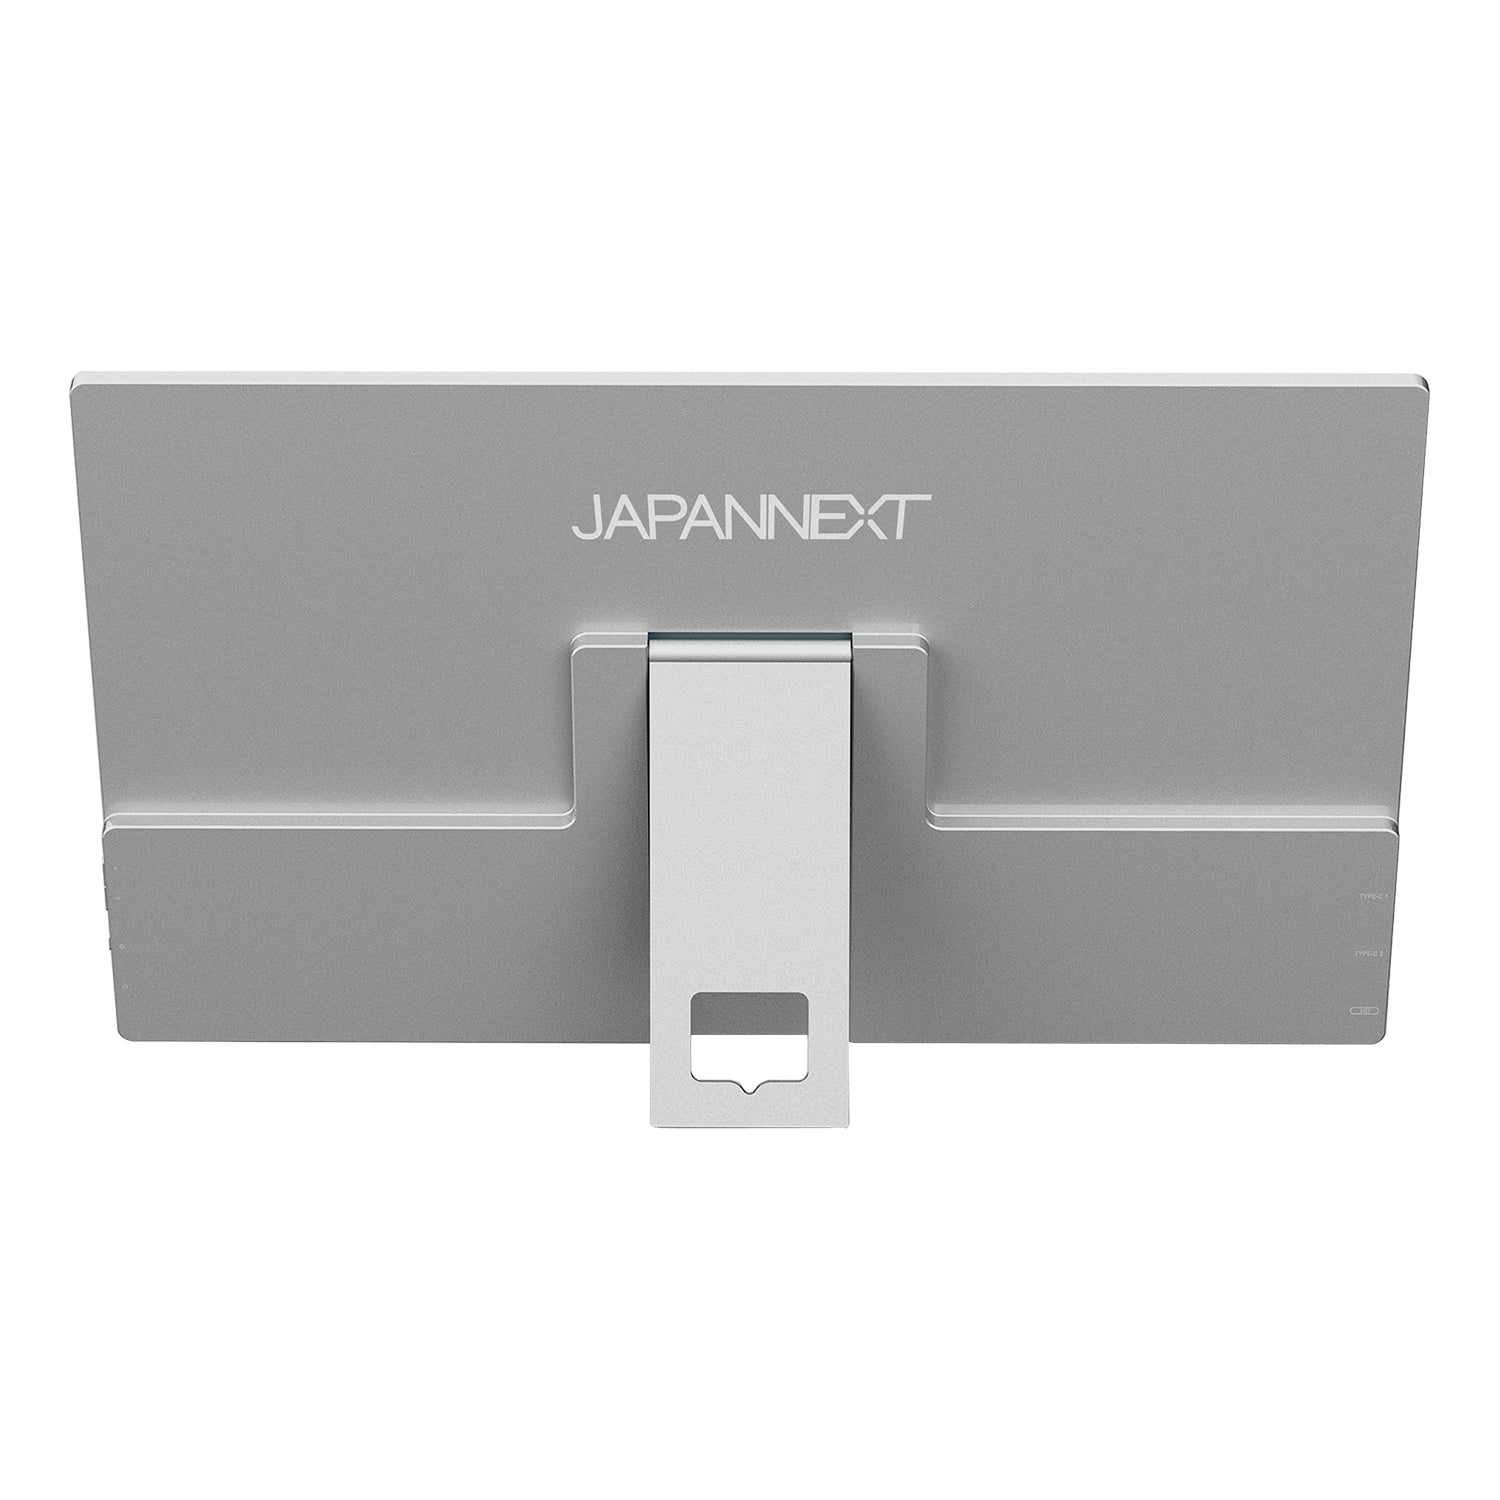 JAPANNEXT 15.6インチ タッチパネル搭載 フルHD(1920x1080)解像度 